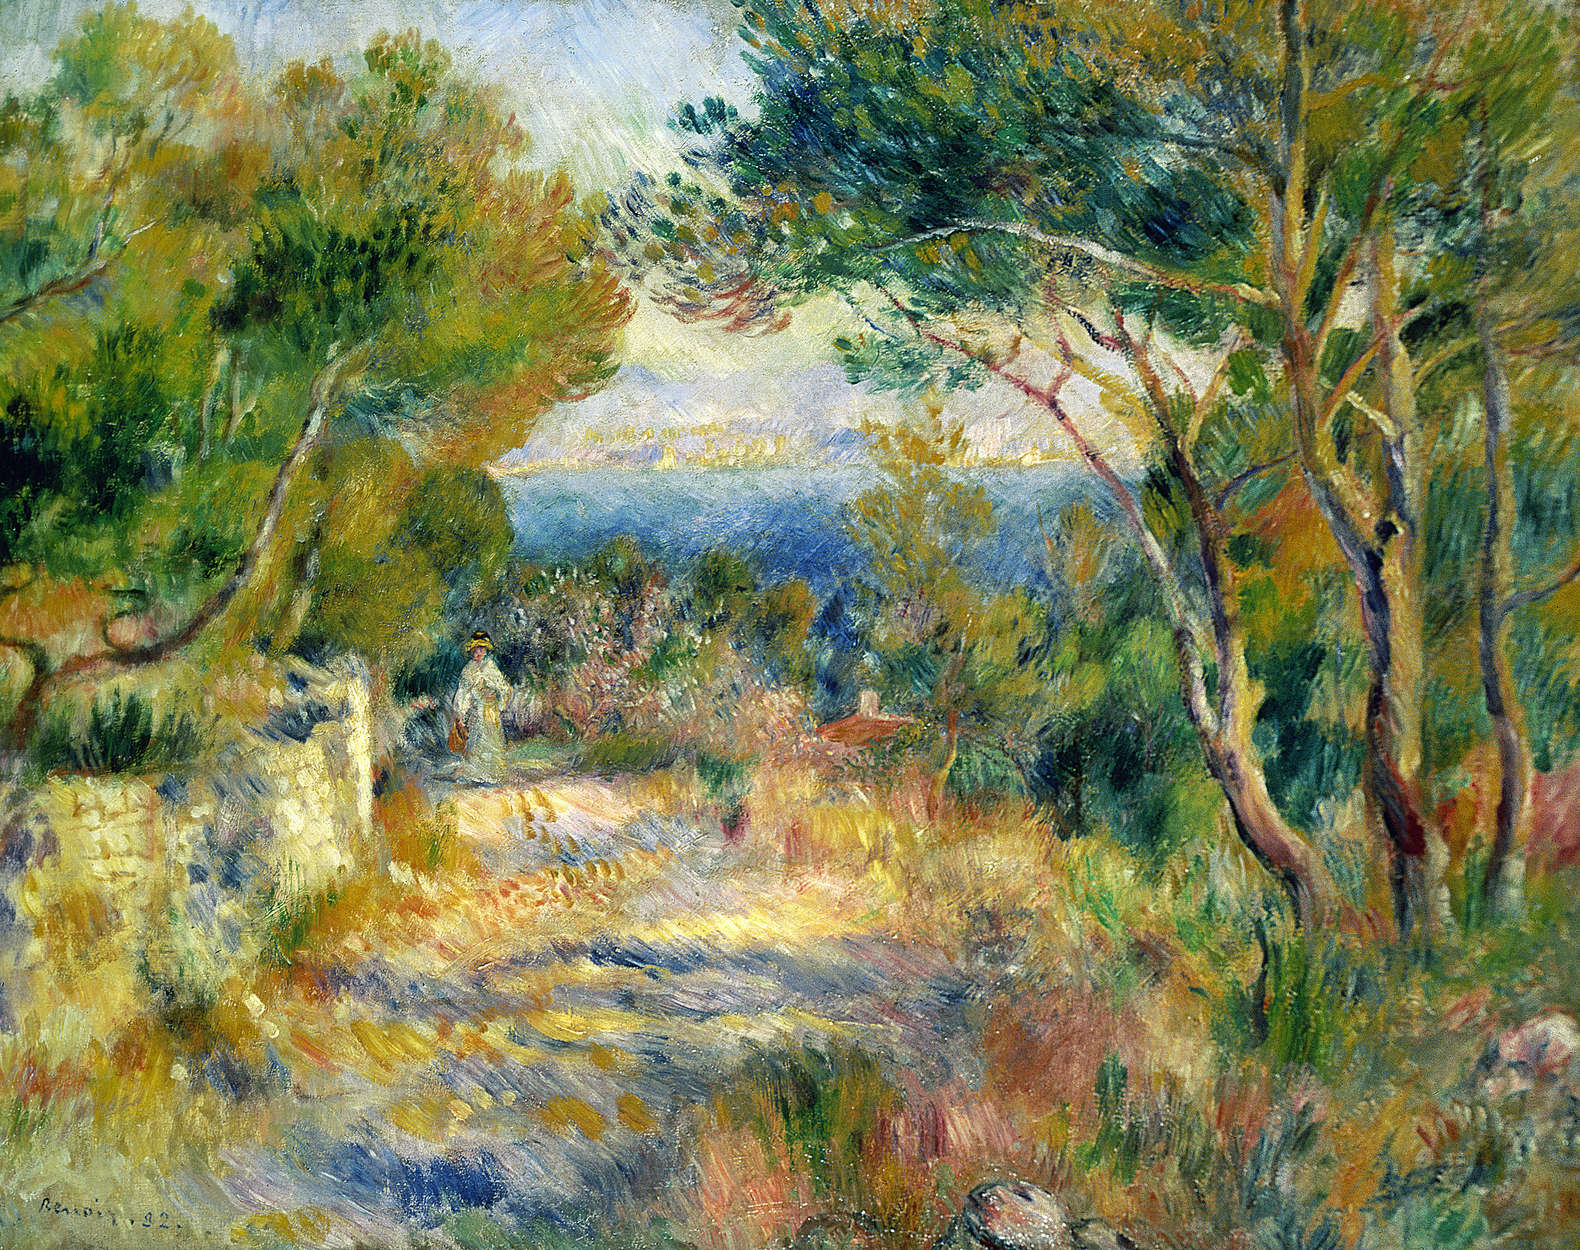             Photo wallpaper "L'Estaque" by Pierre Auguste Renoir
        